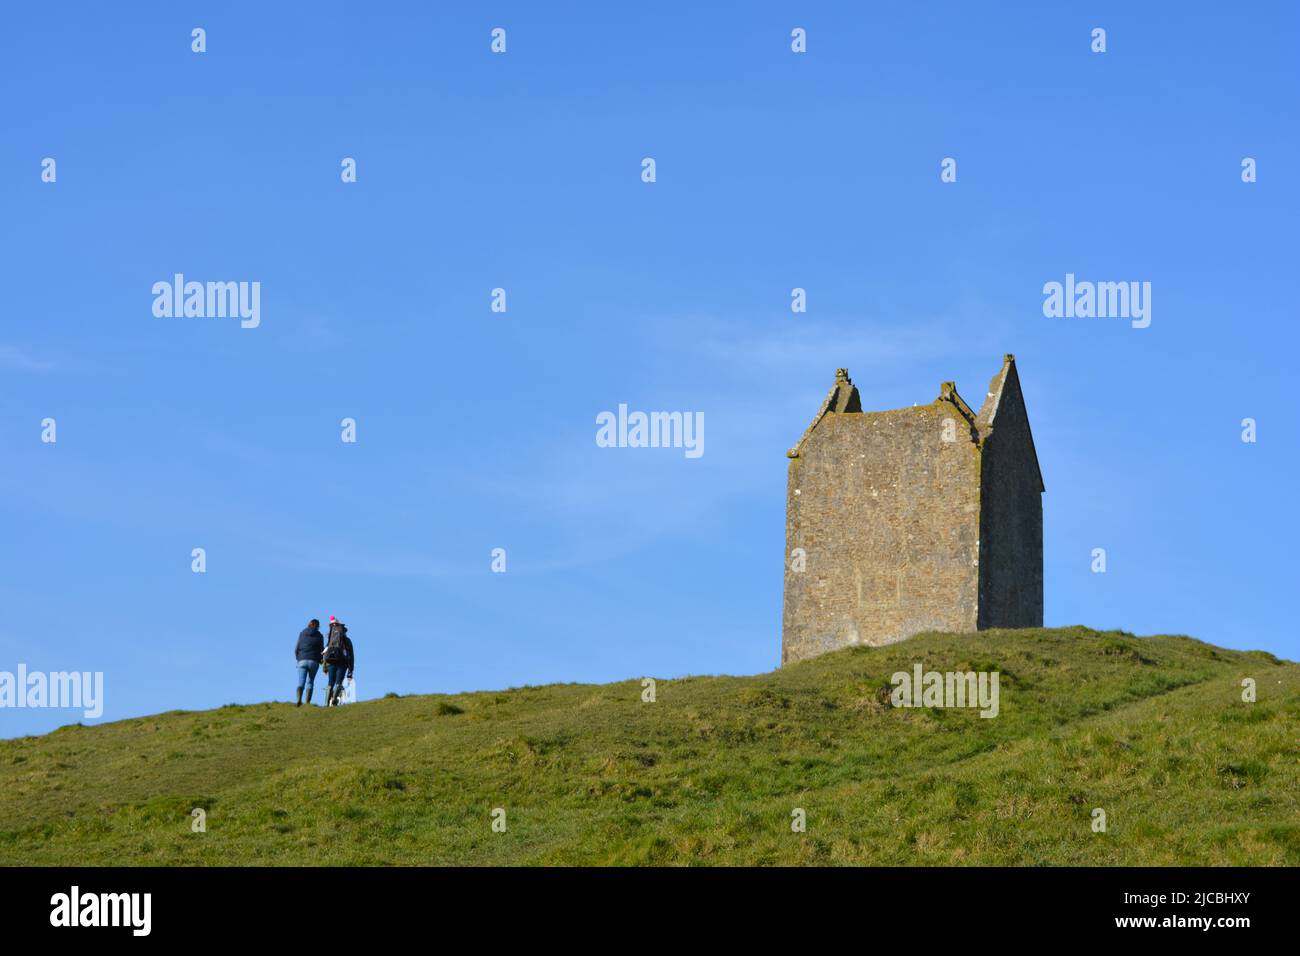 Bruton, Somerset, Angleterre. Wrankers au sommet d'une colline près de la Dovecote, une tour de calcaire historique construite entre 15th et 17th siècles, maintenant un niveau II li Banque D'Images